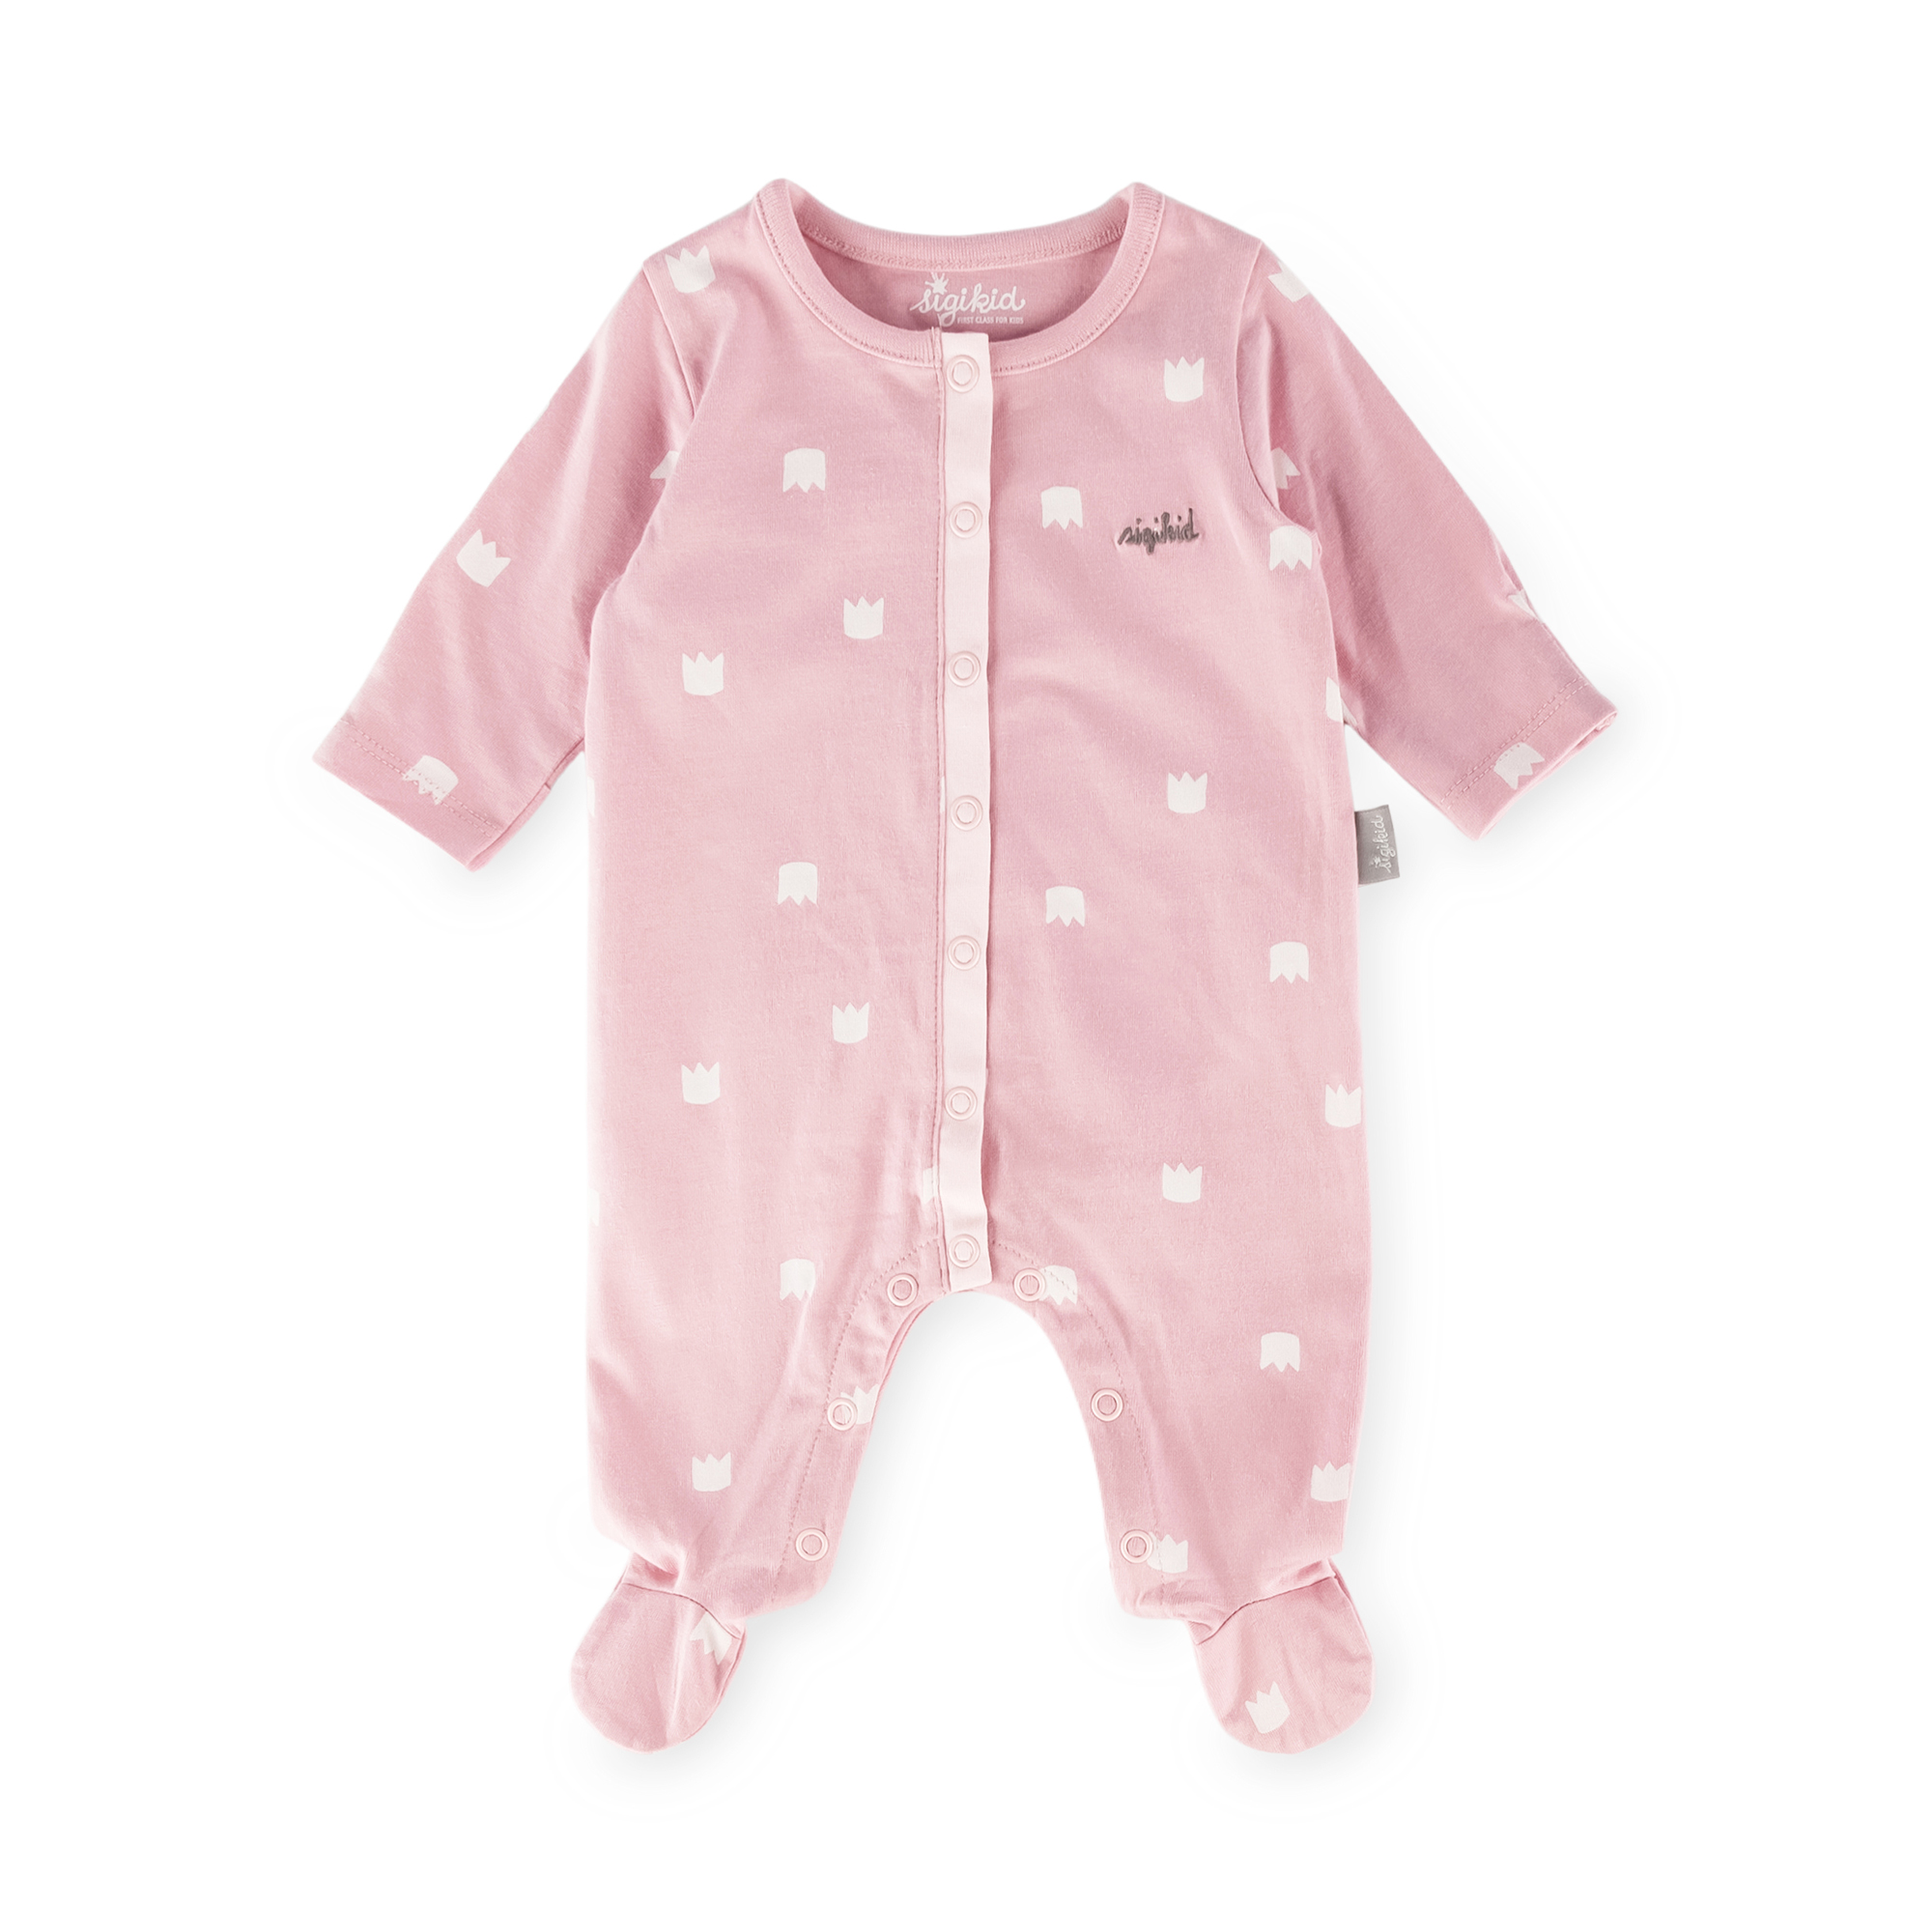 Newborn baby footed onesie romper, foldover mittens, pink